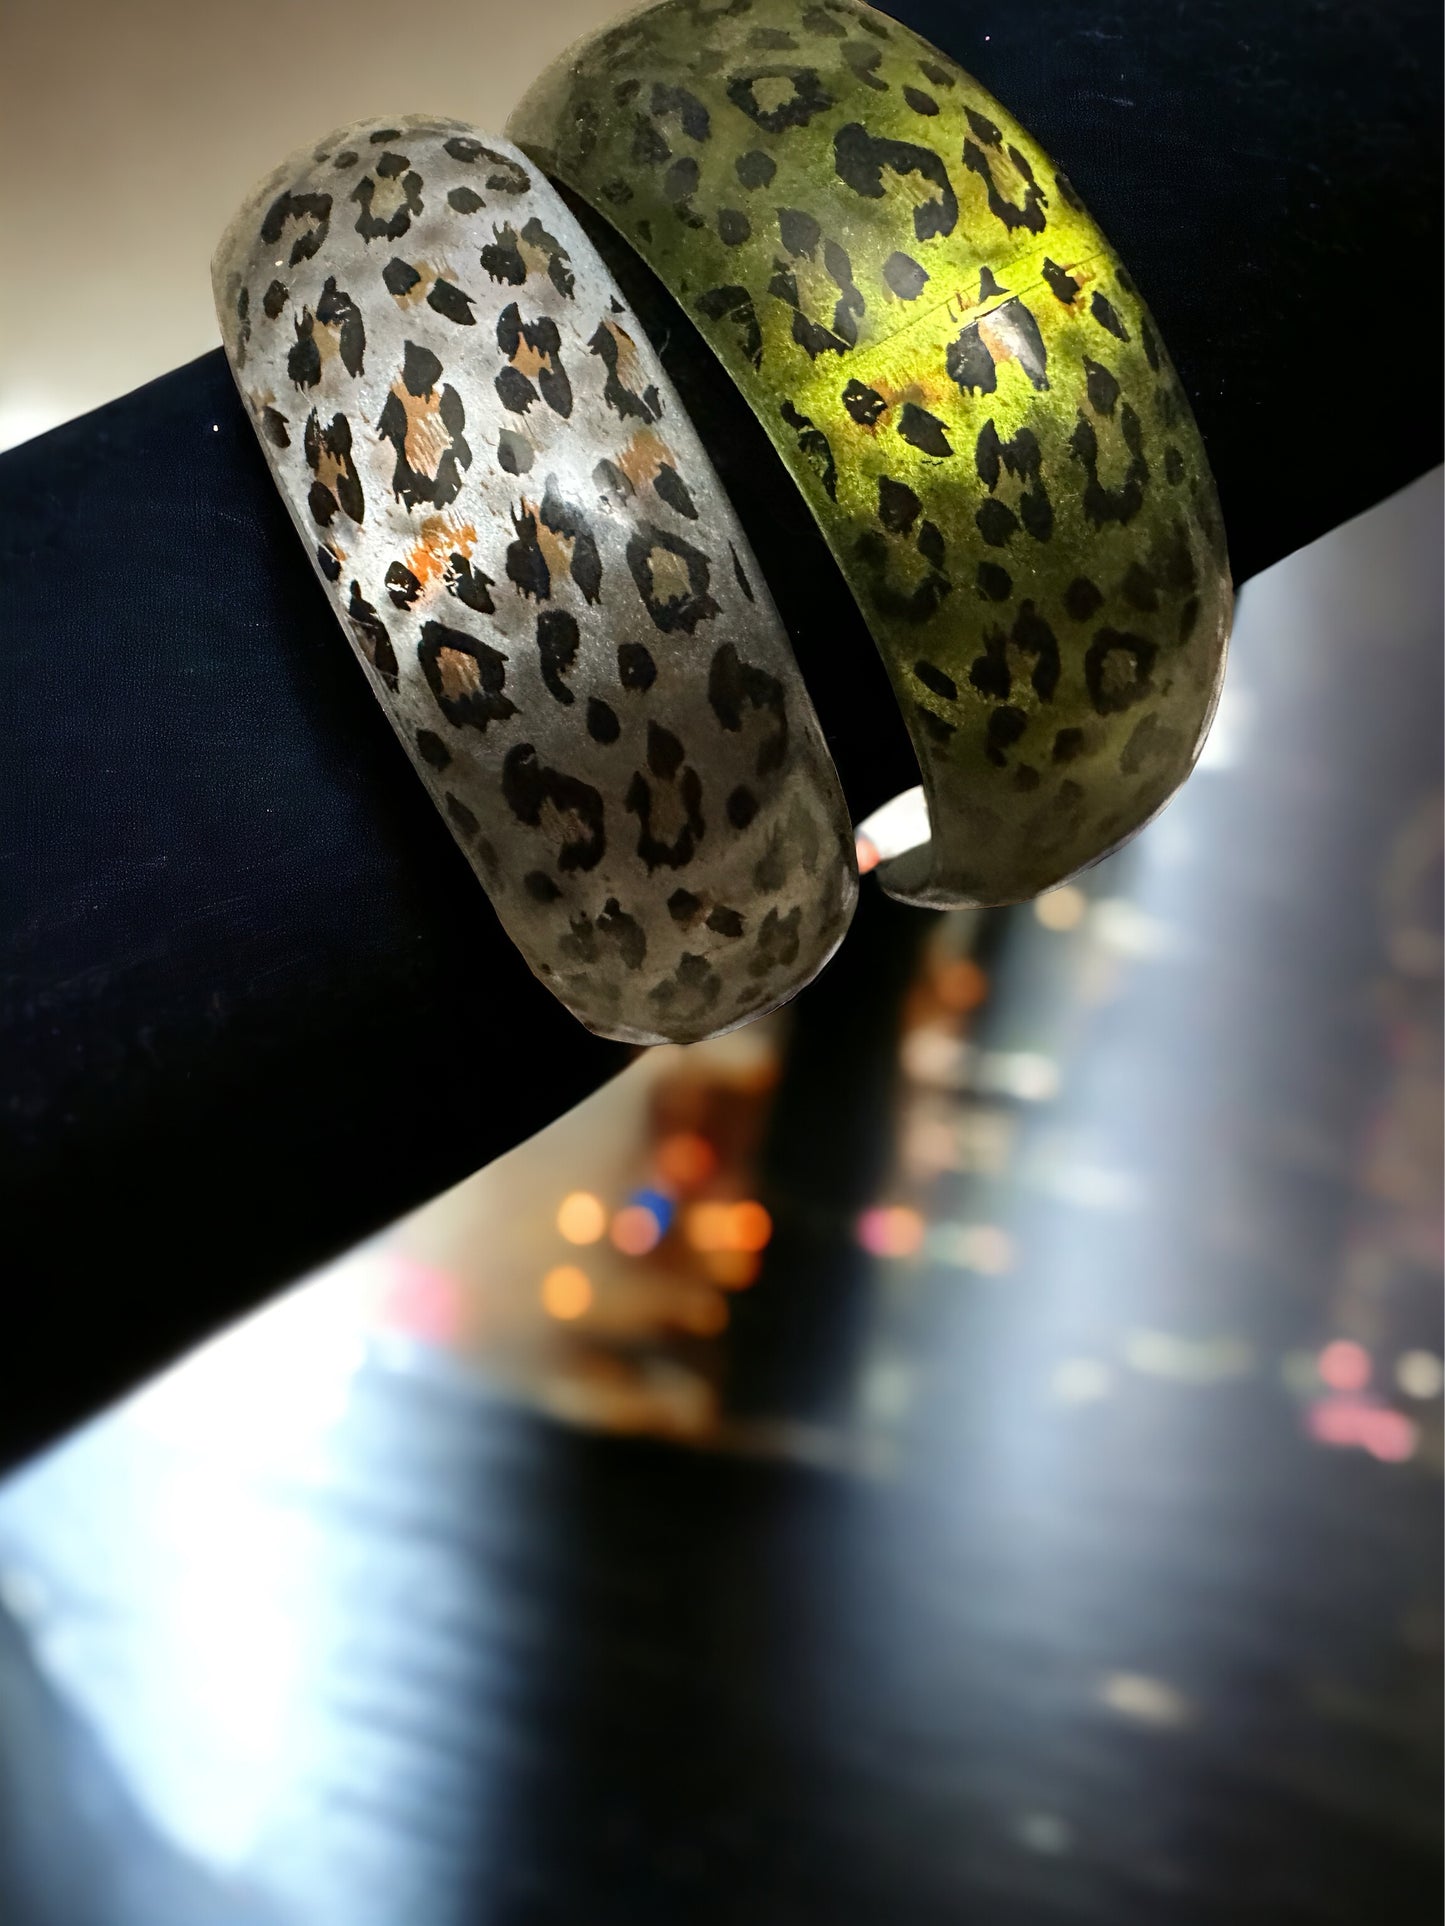 Leopard Animal Print Bracelets